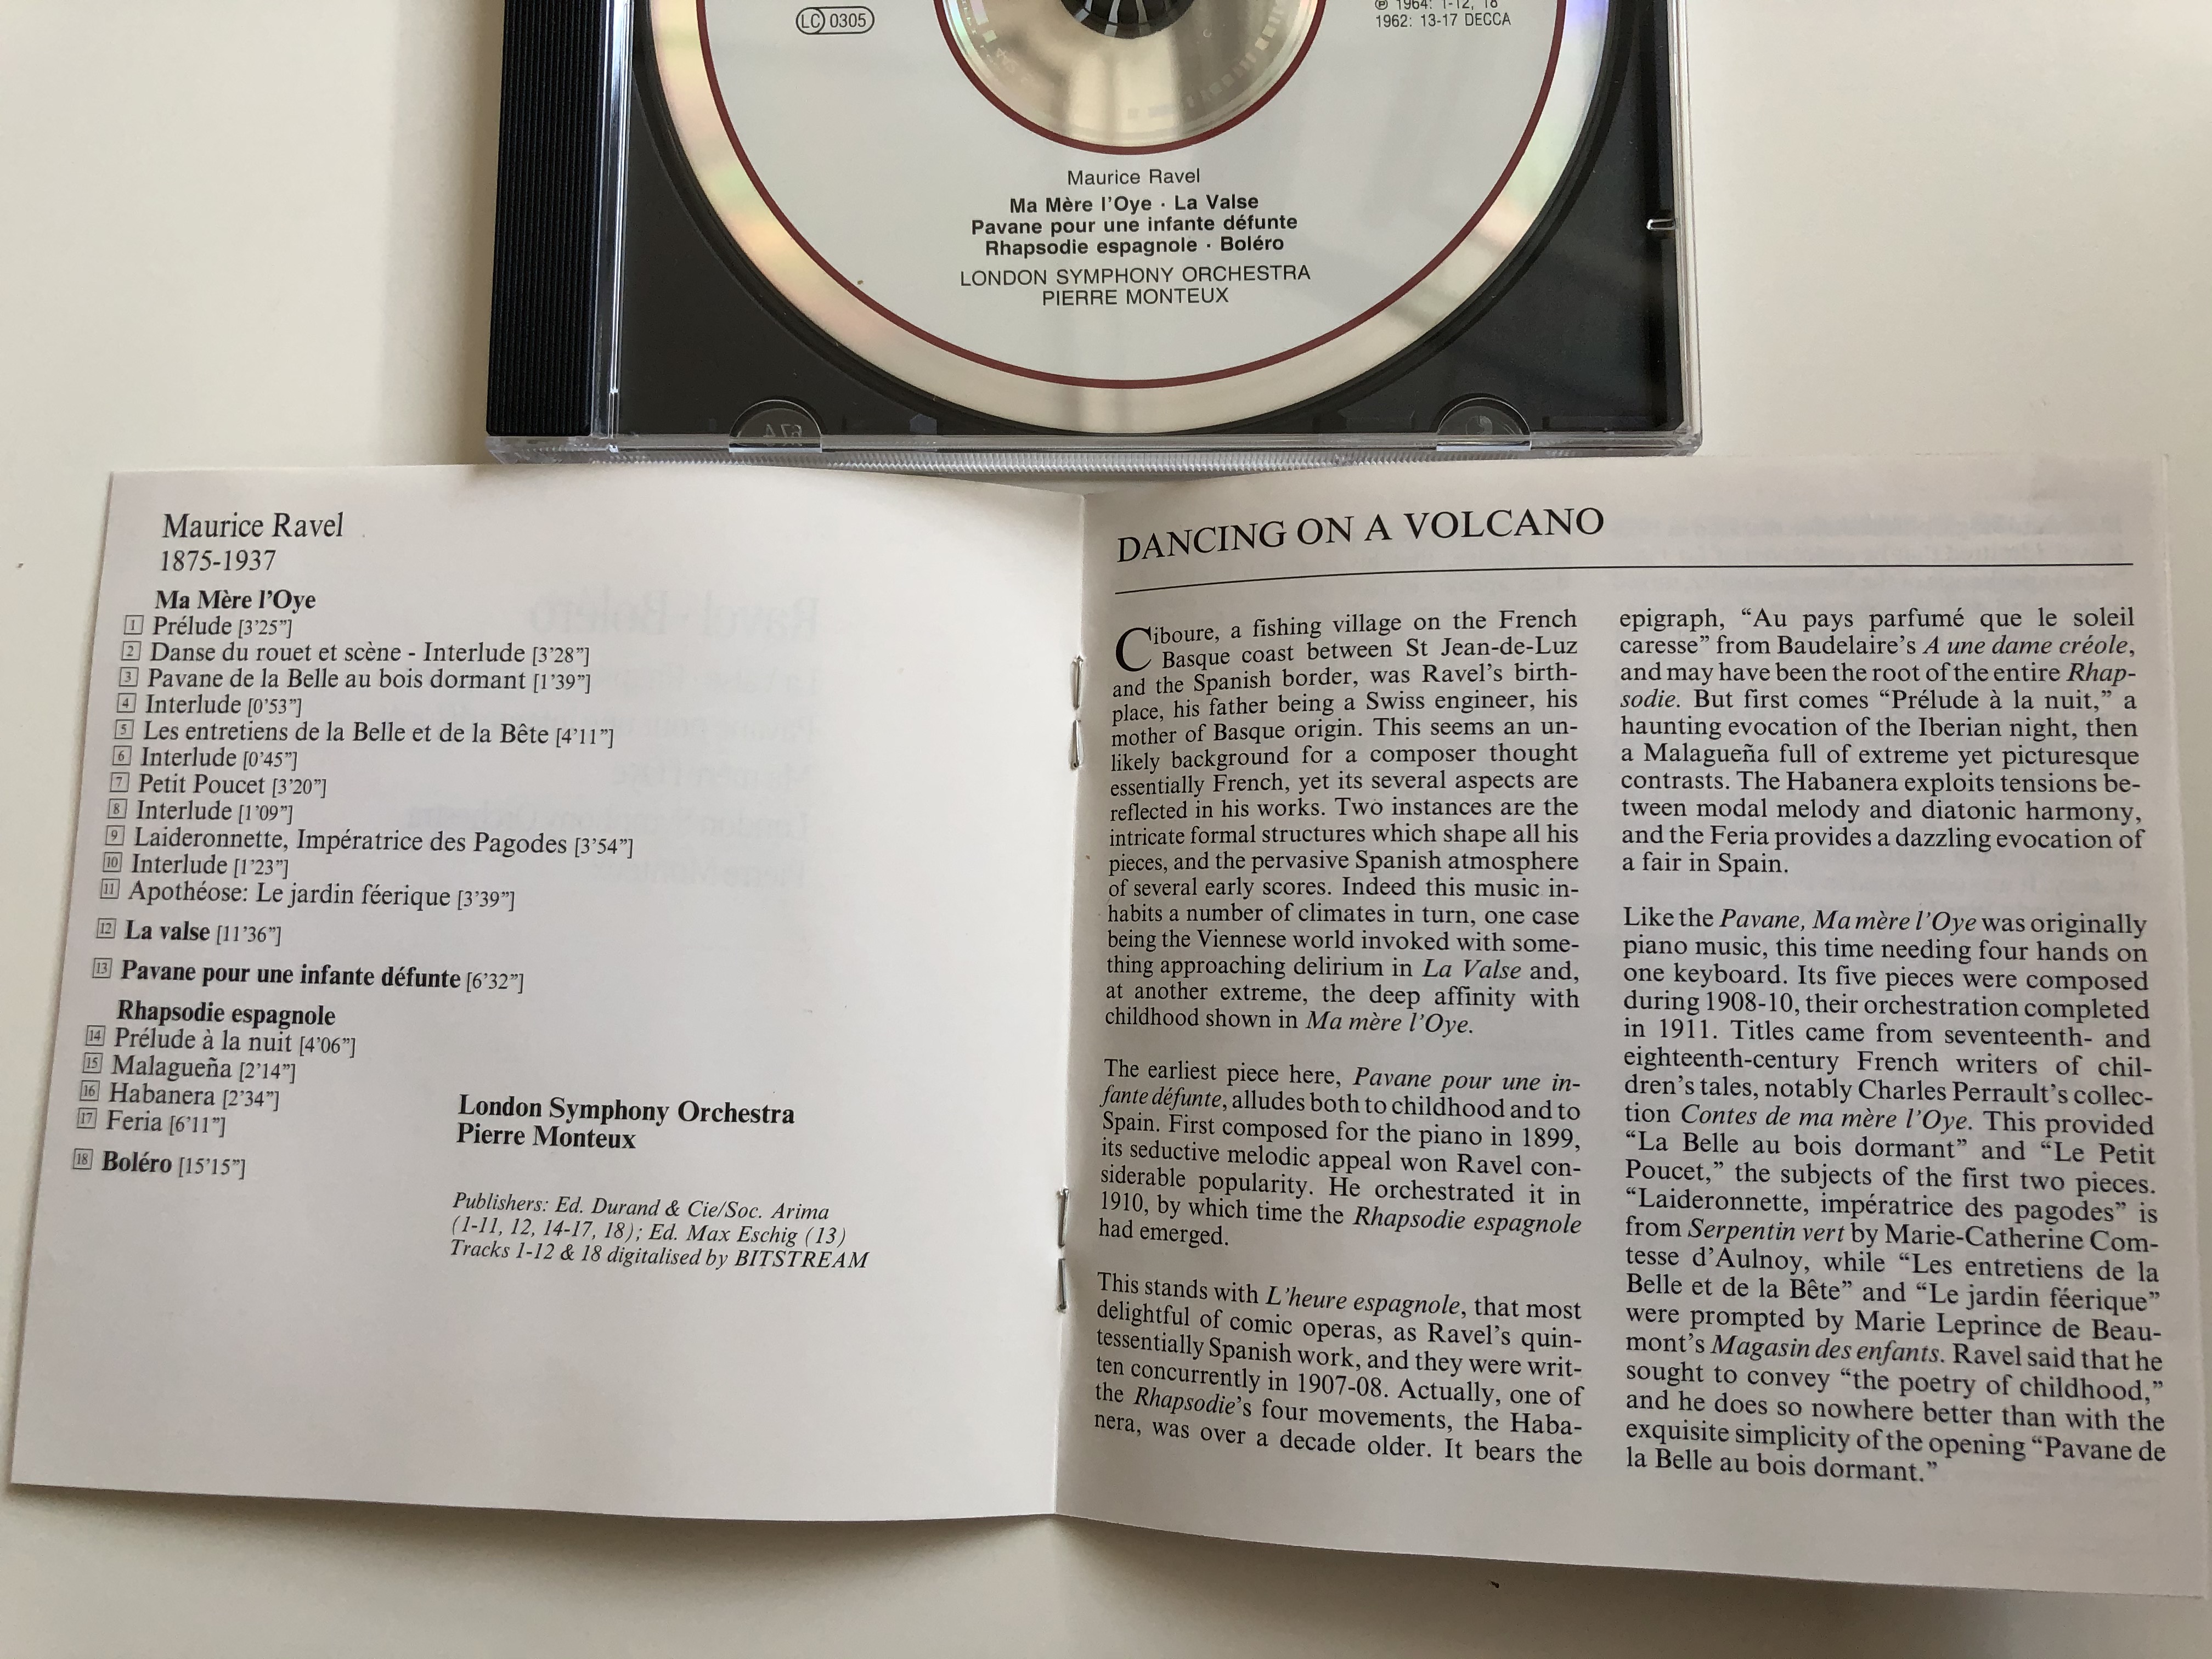 ravel-bolero-la-valse-rhapsodie-espagnole-pavane-pour-une-infante-defunte-ma-mere-l-oye-london-symphony-orchestra-pierre-monteux-philips-audio-cd-1995-442-542-2-3-.jpg